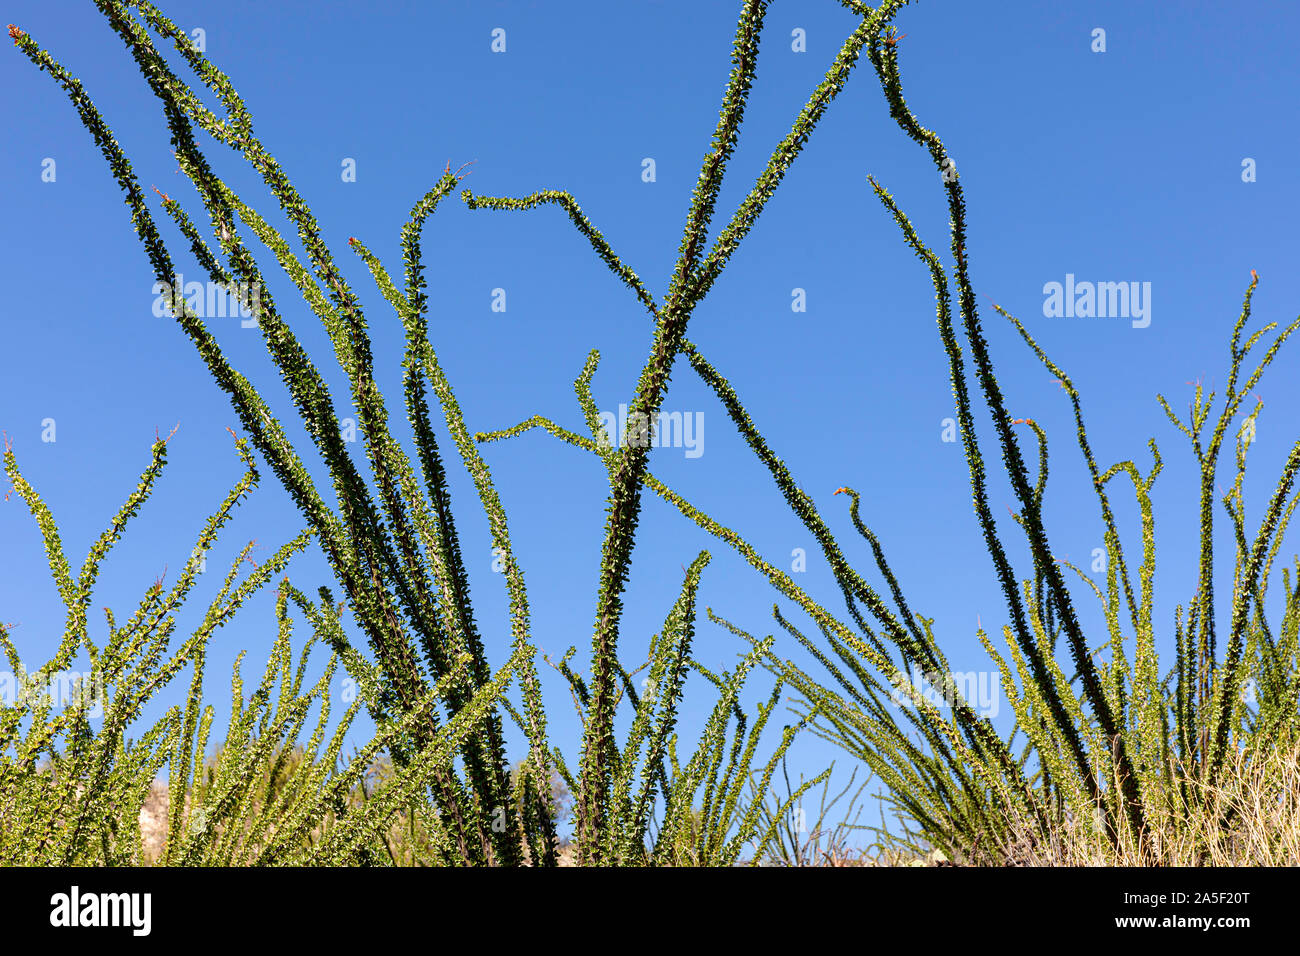 Ocotillo astratta, rami contro il cielo blu, southern Arizona, Stati Uniti d'America Foto Stock